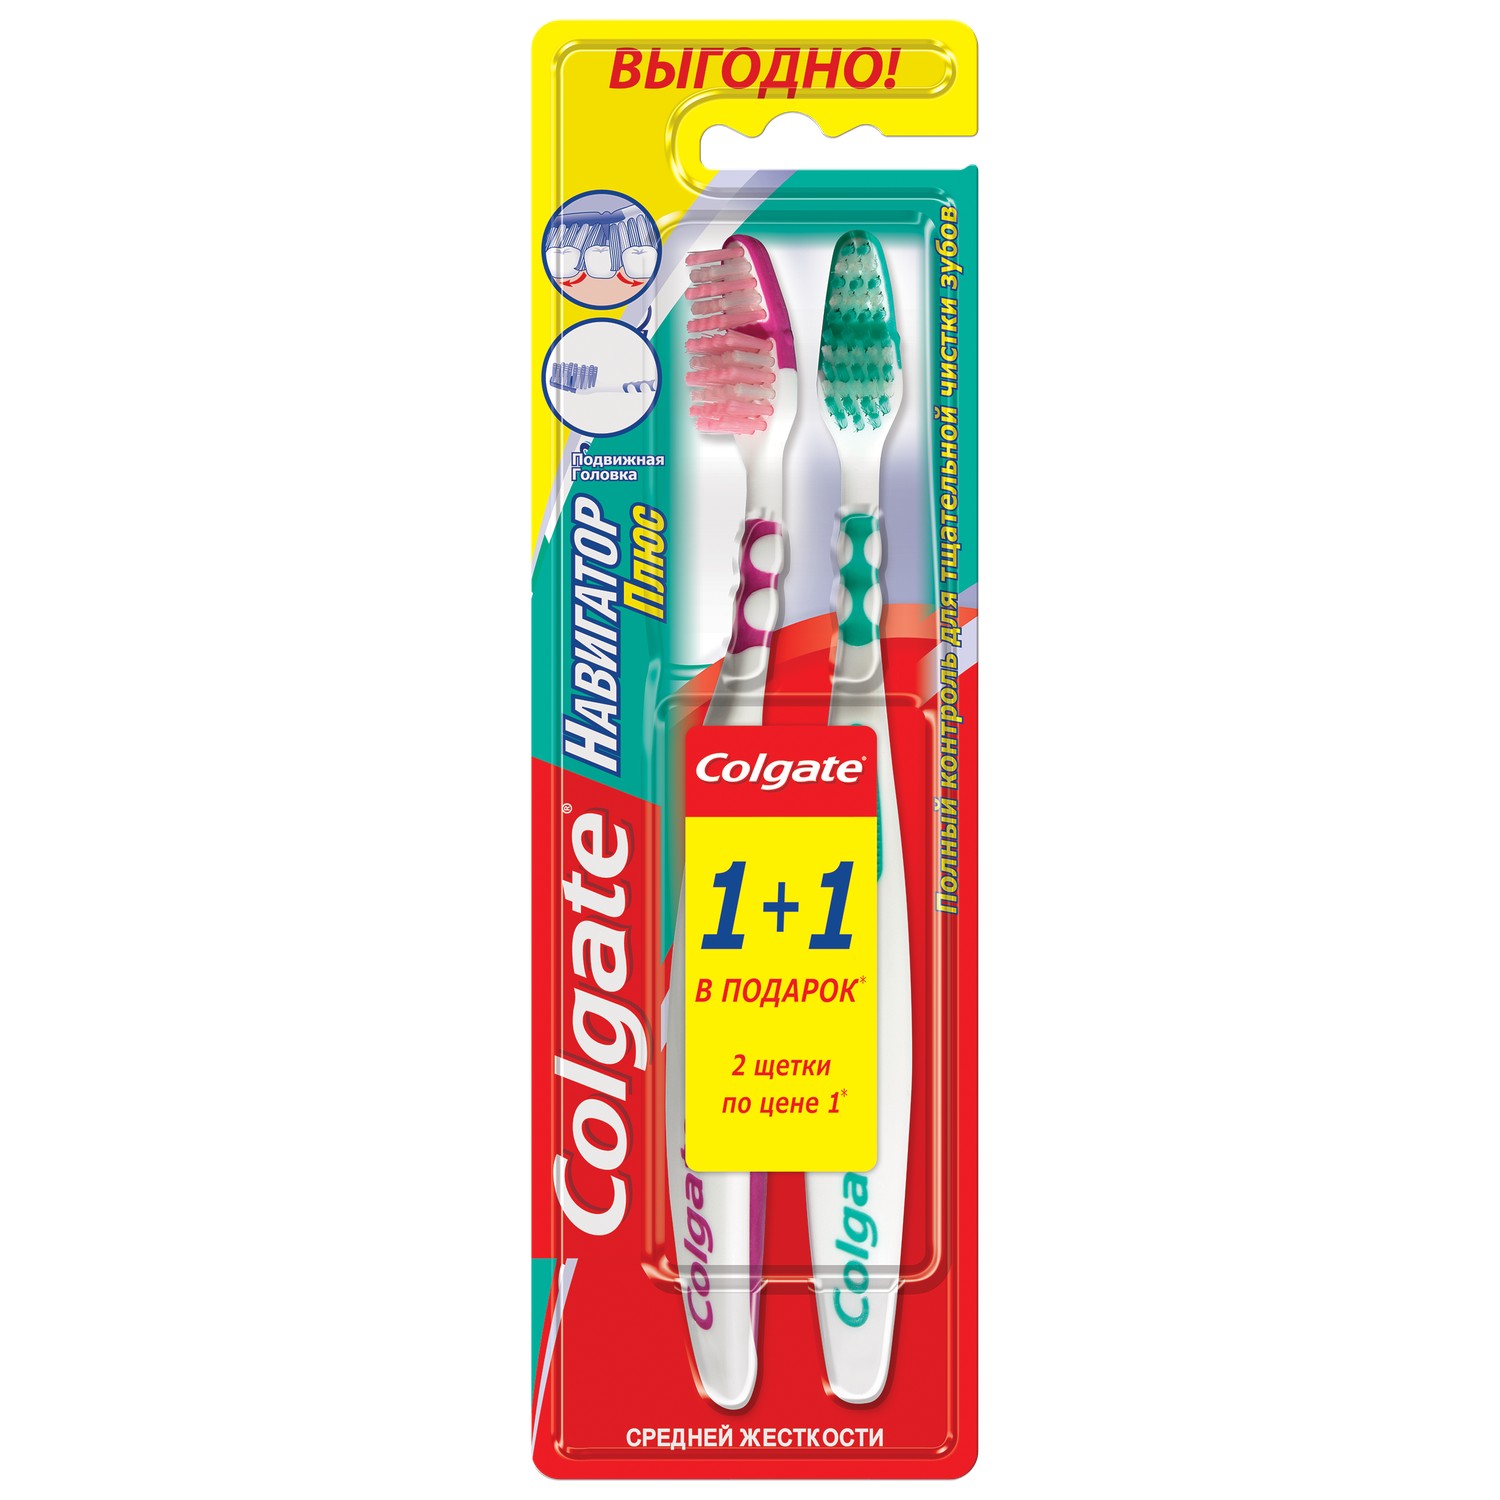 Купить Колгейт щетка зубная Навигатор средняя х2, Colgate-Palmolive